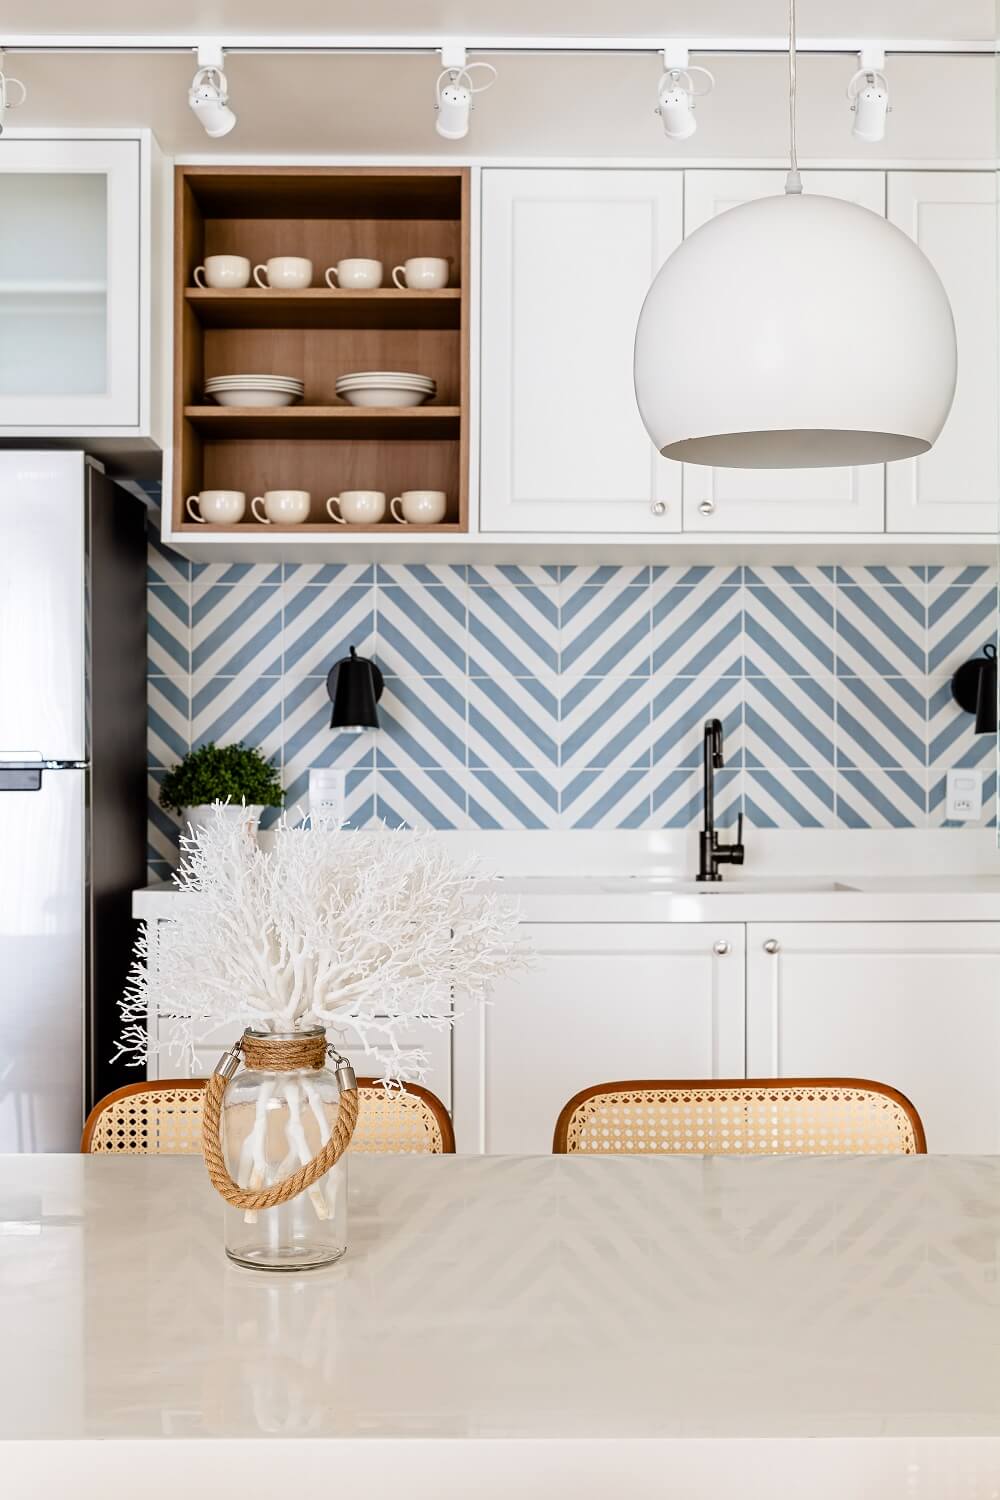 Cerâmicas em tom azul claro decoram a parede da cozinha